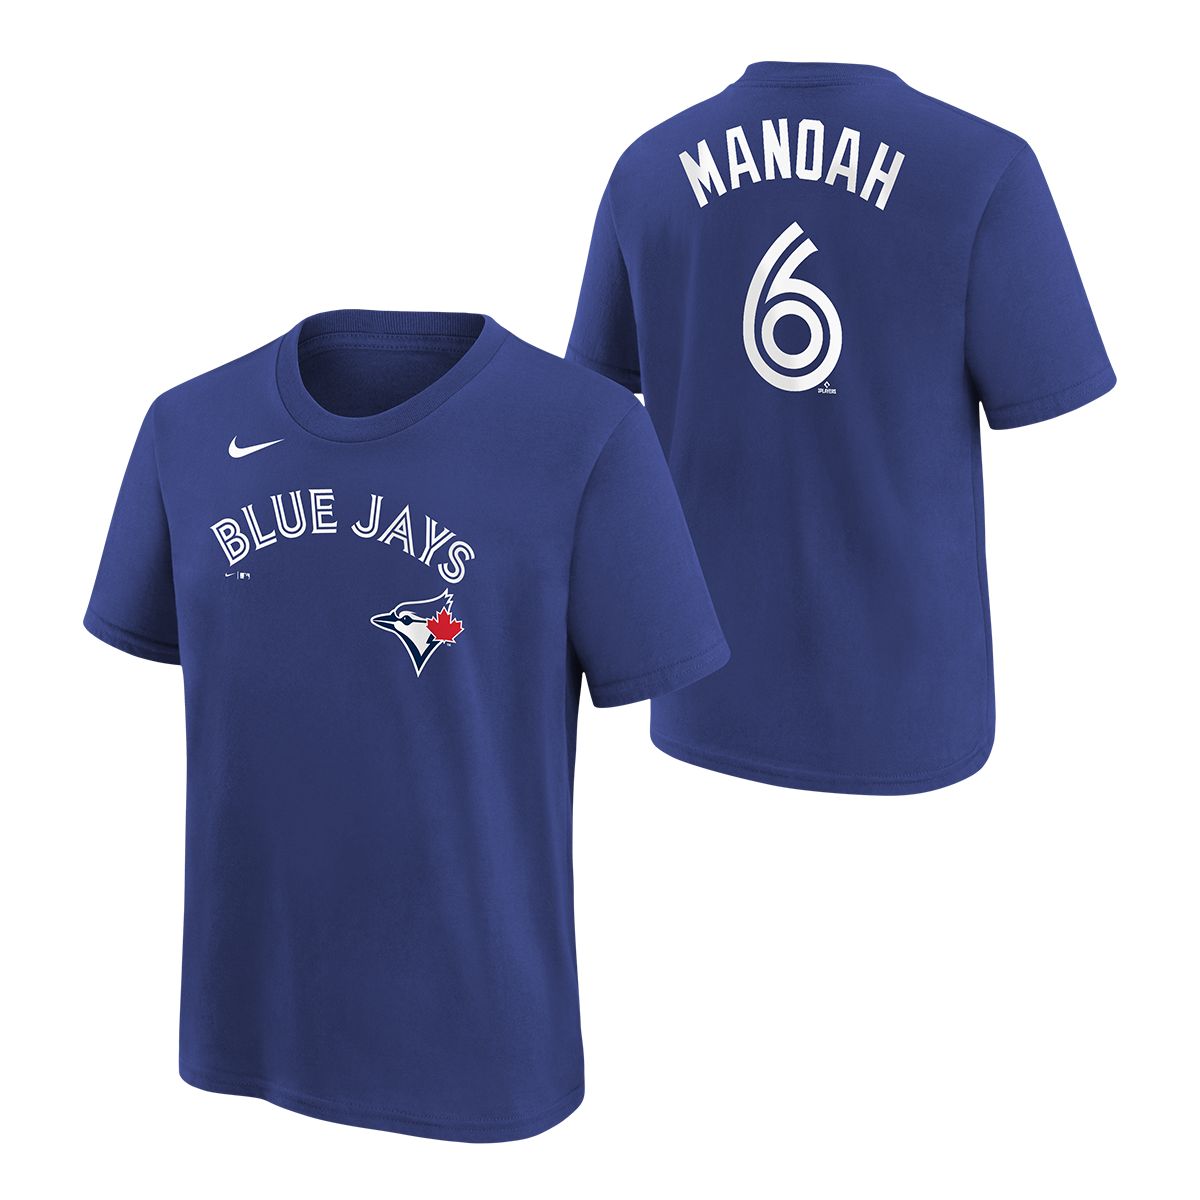 Alek Manoah T-Shirts, Alek Manoah Name & Number Shirts - Blue Jays T-Shirts  Store